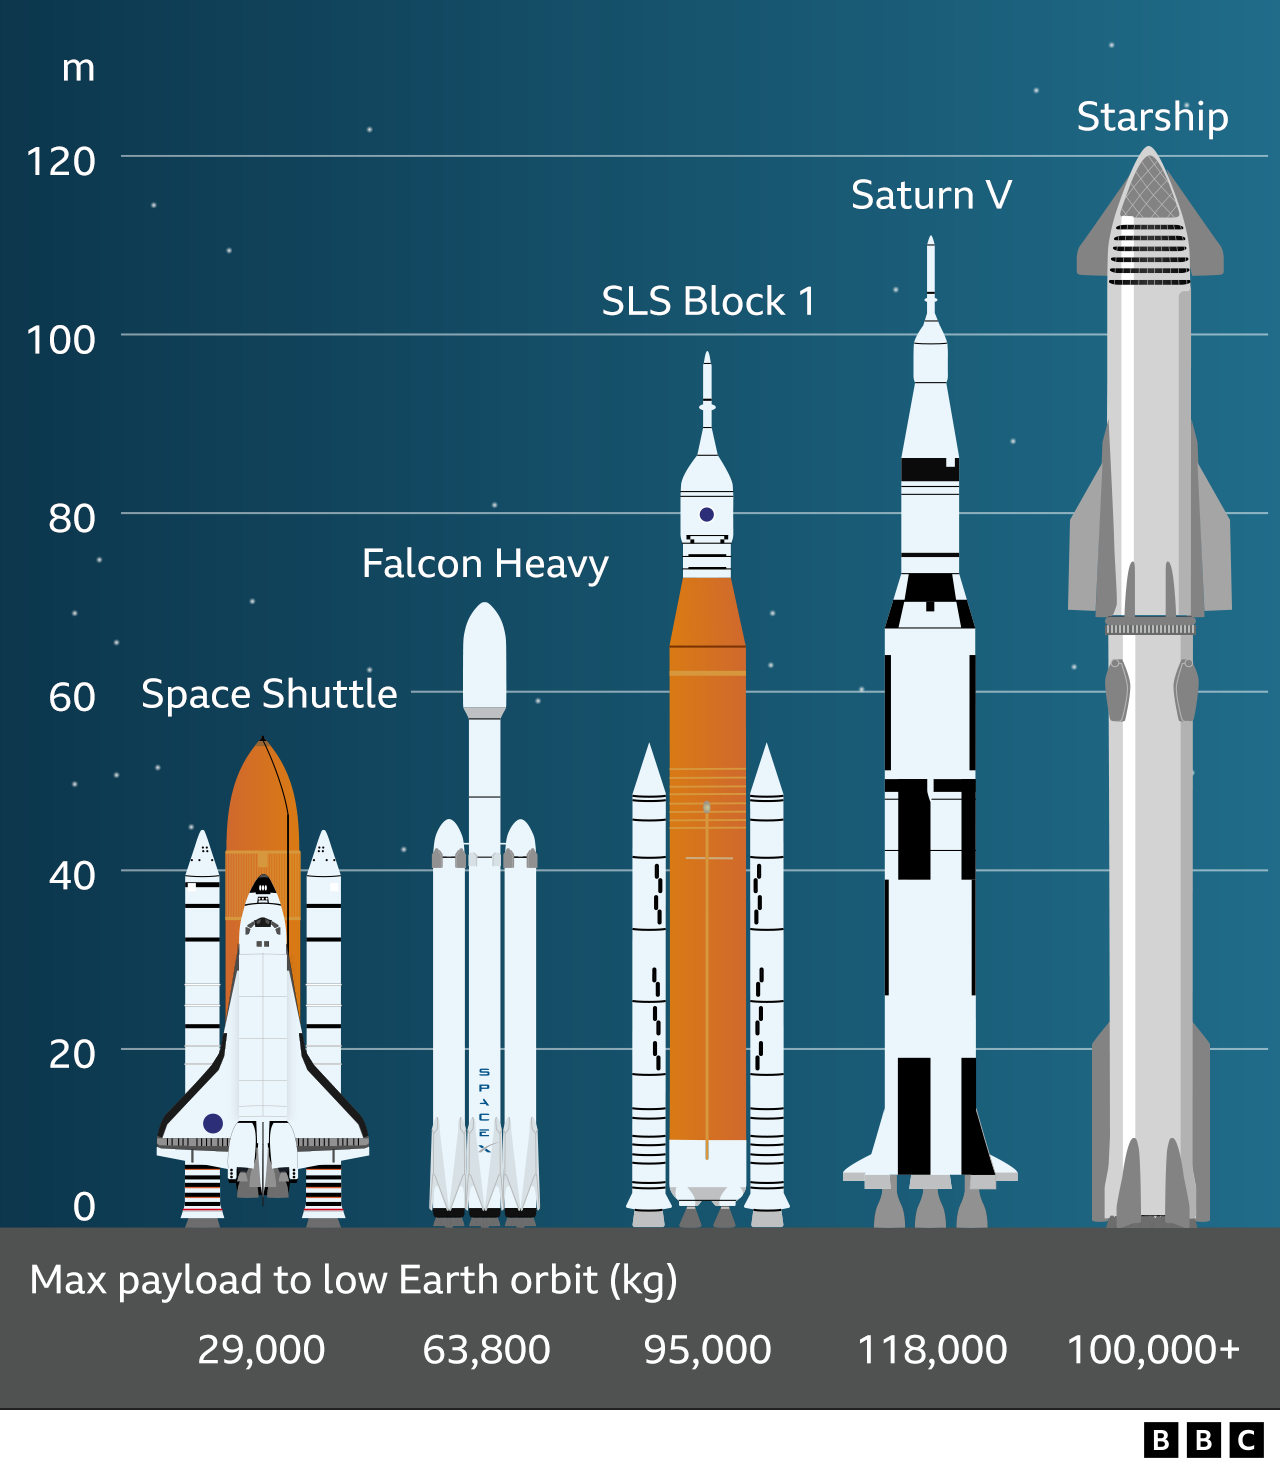 Rocket comparison